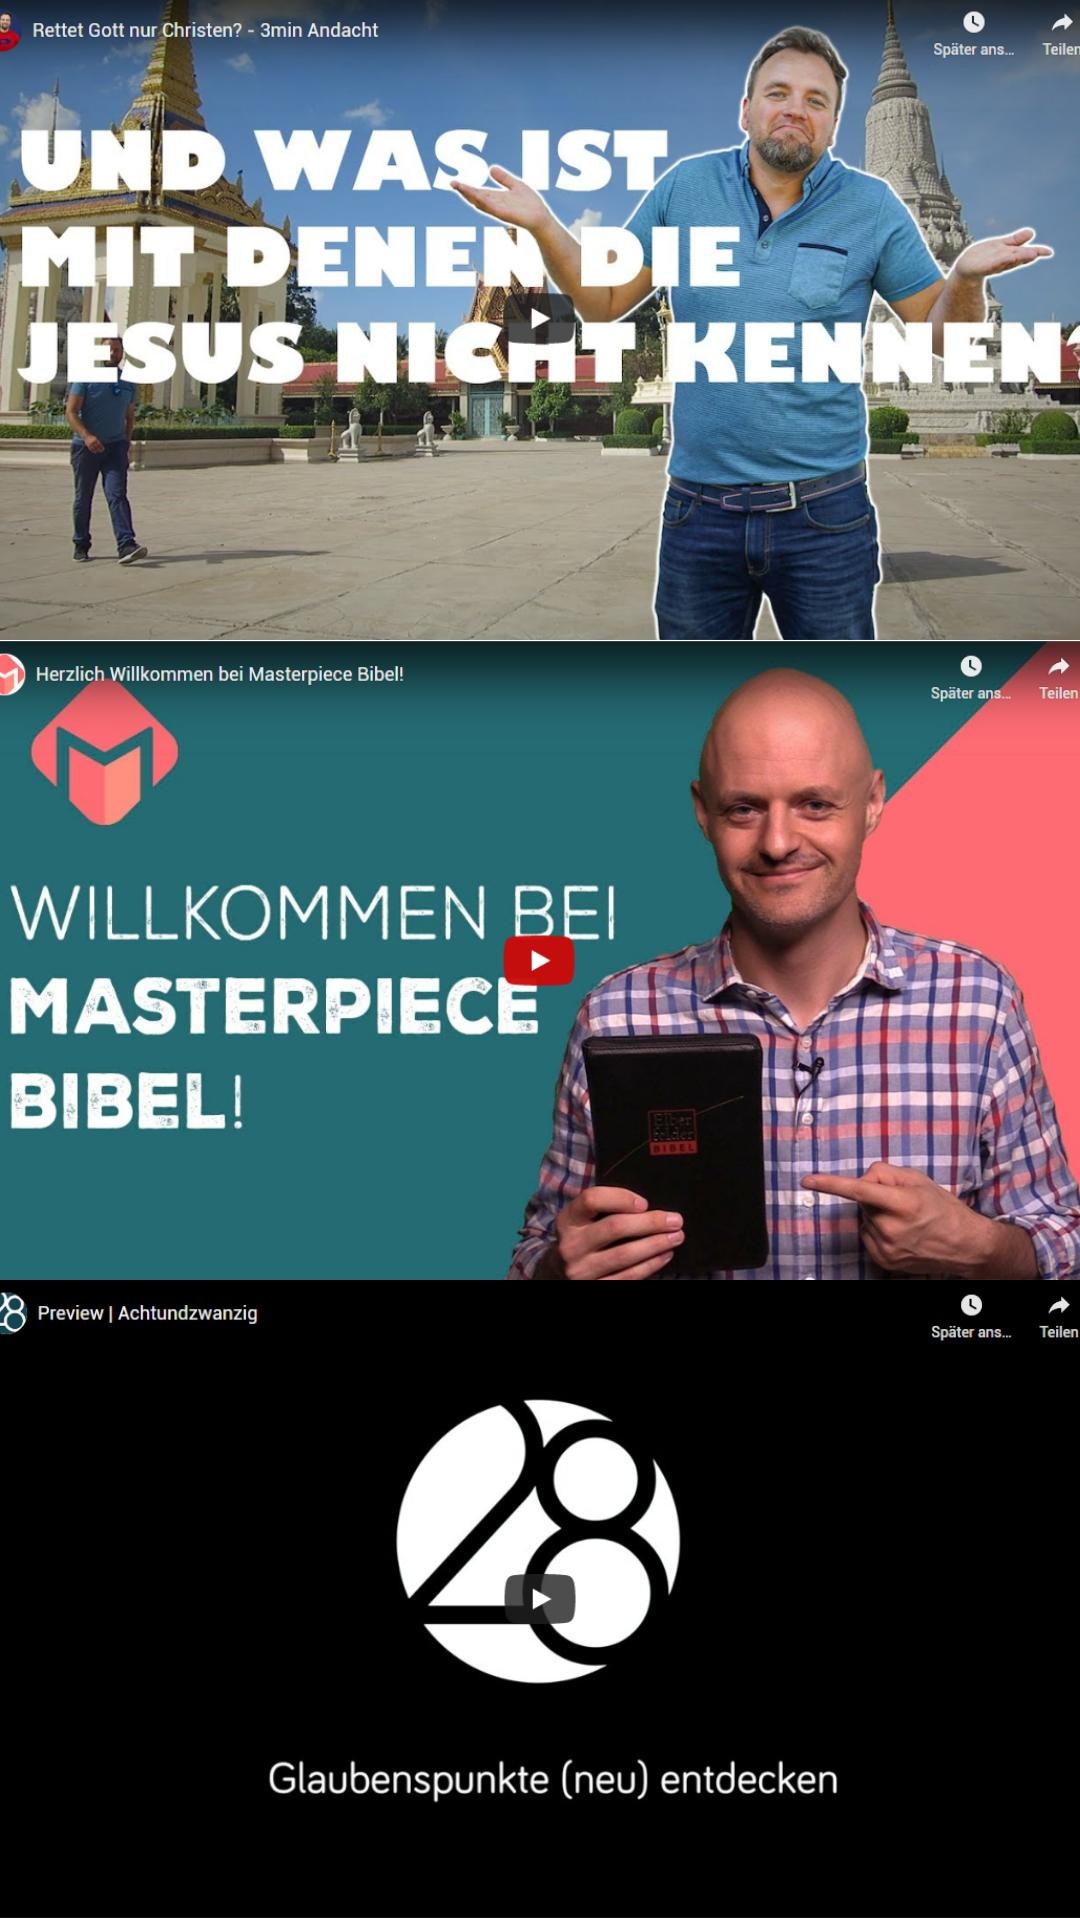 Masterpiece Bibel, 3min Video, Twisted Reality, Projekt 28 - bitte was?